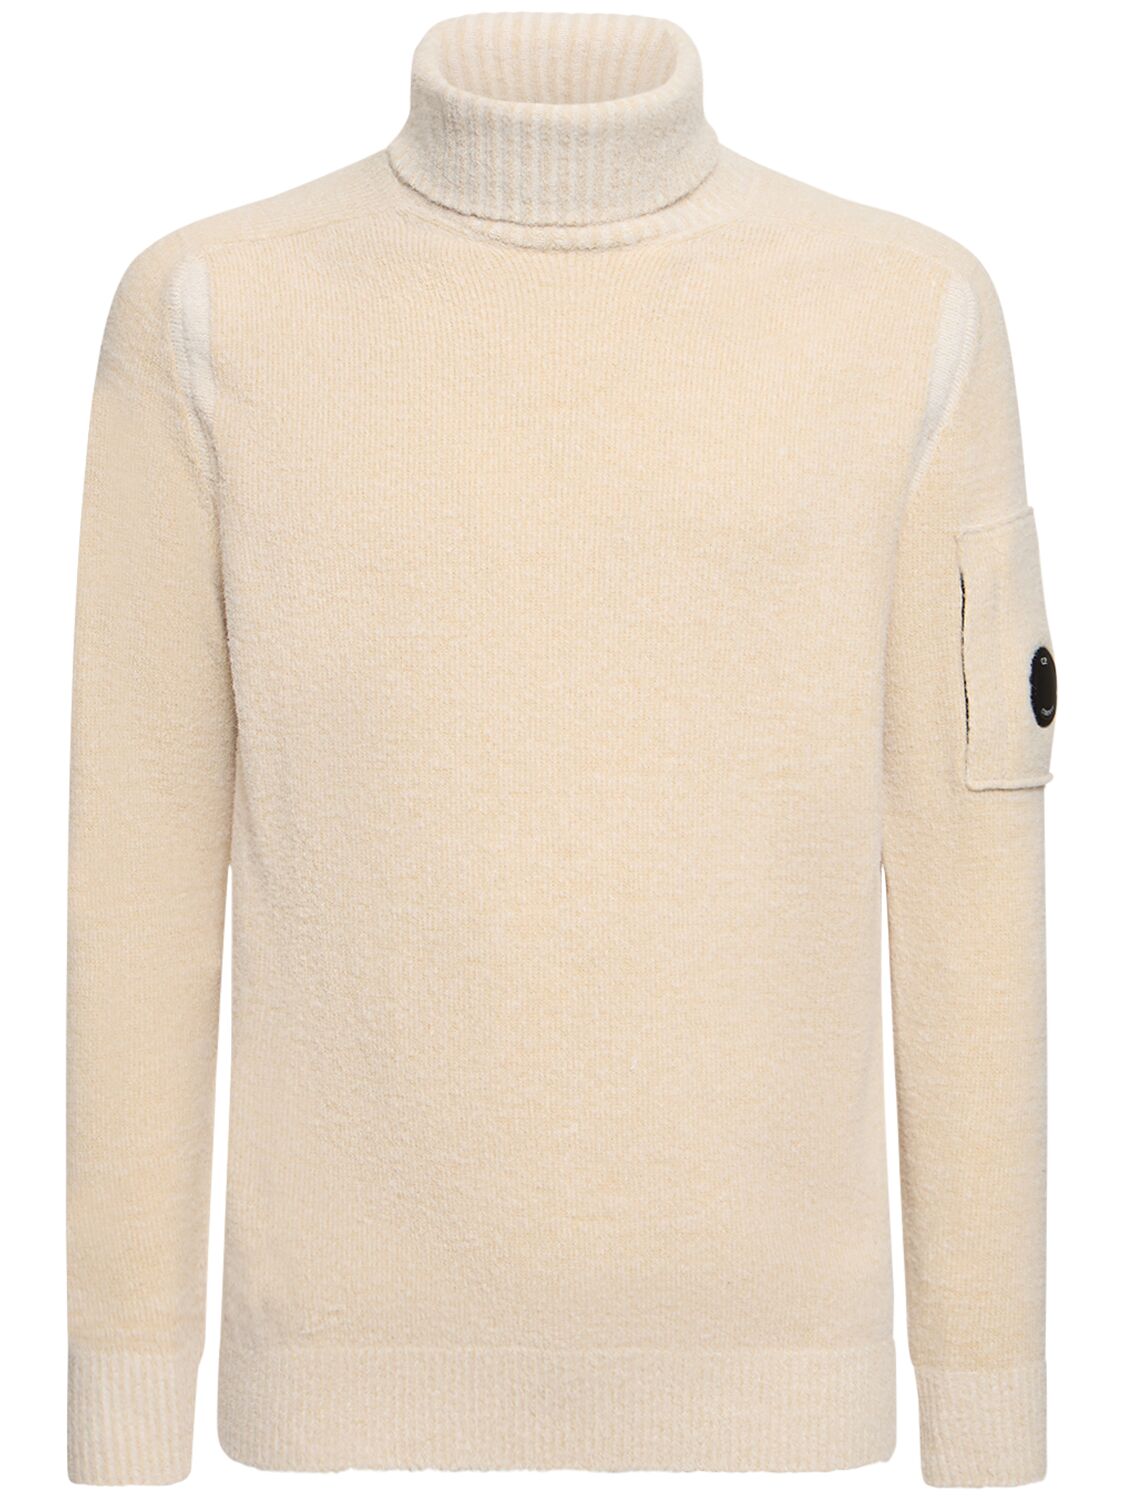 Roll Neck Wool Blend Knit Sweater – MEN > CLOTHING > KNITWEAR